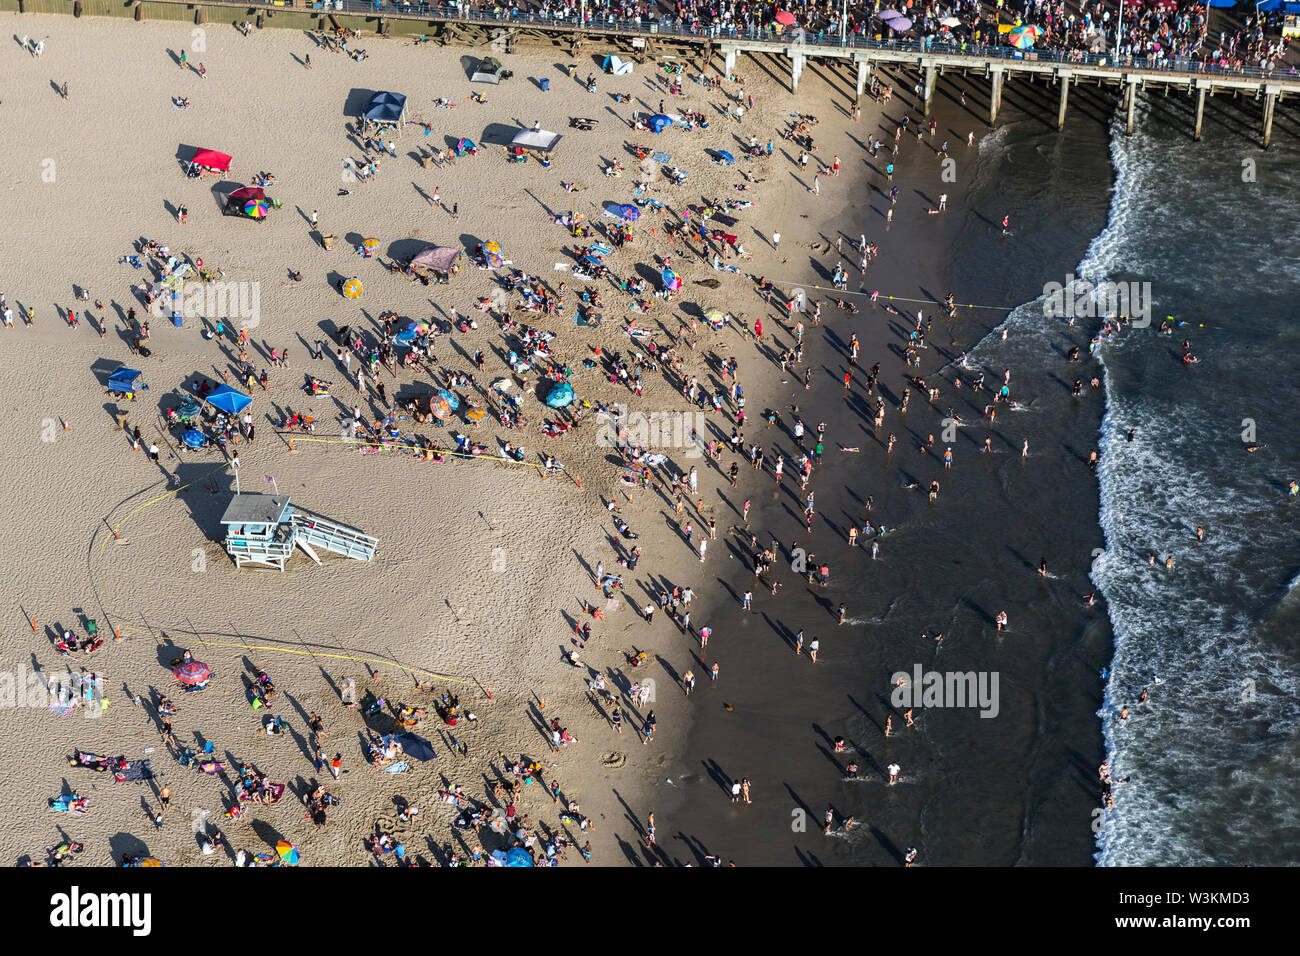 Santa Monica, Californie, USA - 6 août 2016 : Vue aérienne de foules estivales populaires à Santa Monica Beach et de la jetée, près de Los Angeles. Banque D'Images